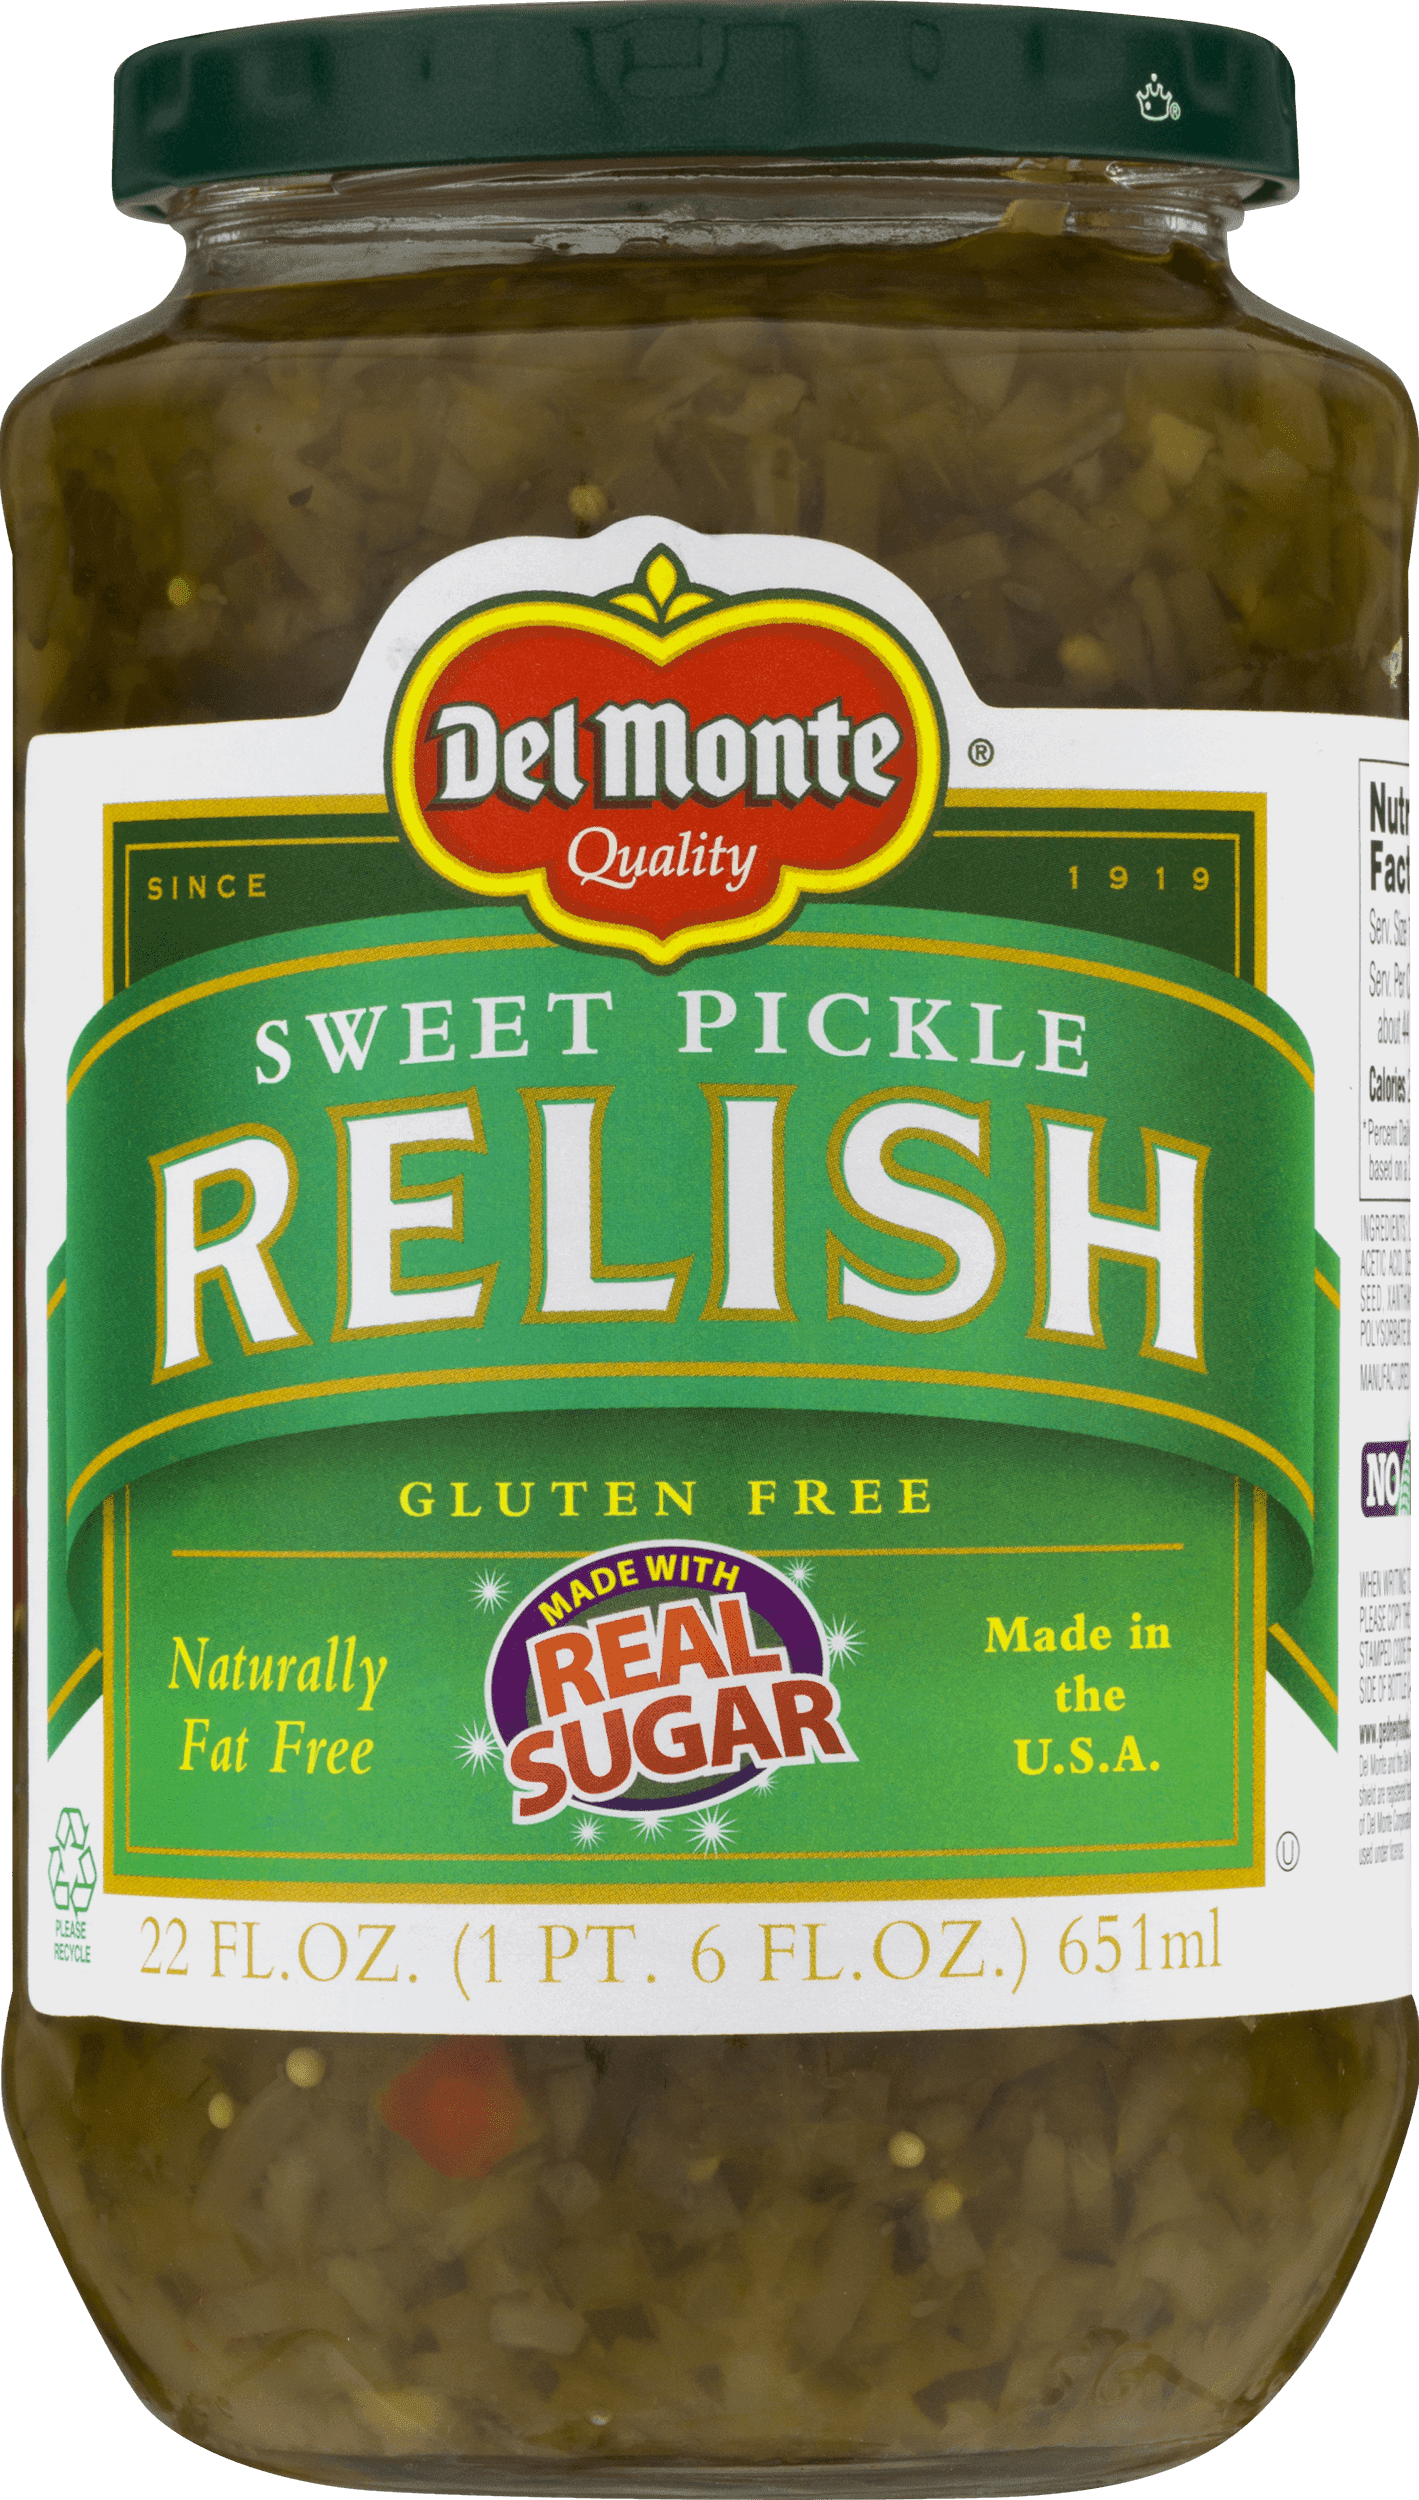 Del Monte Hot Dog Relish - 12oz – Gedney Foods